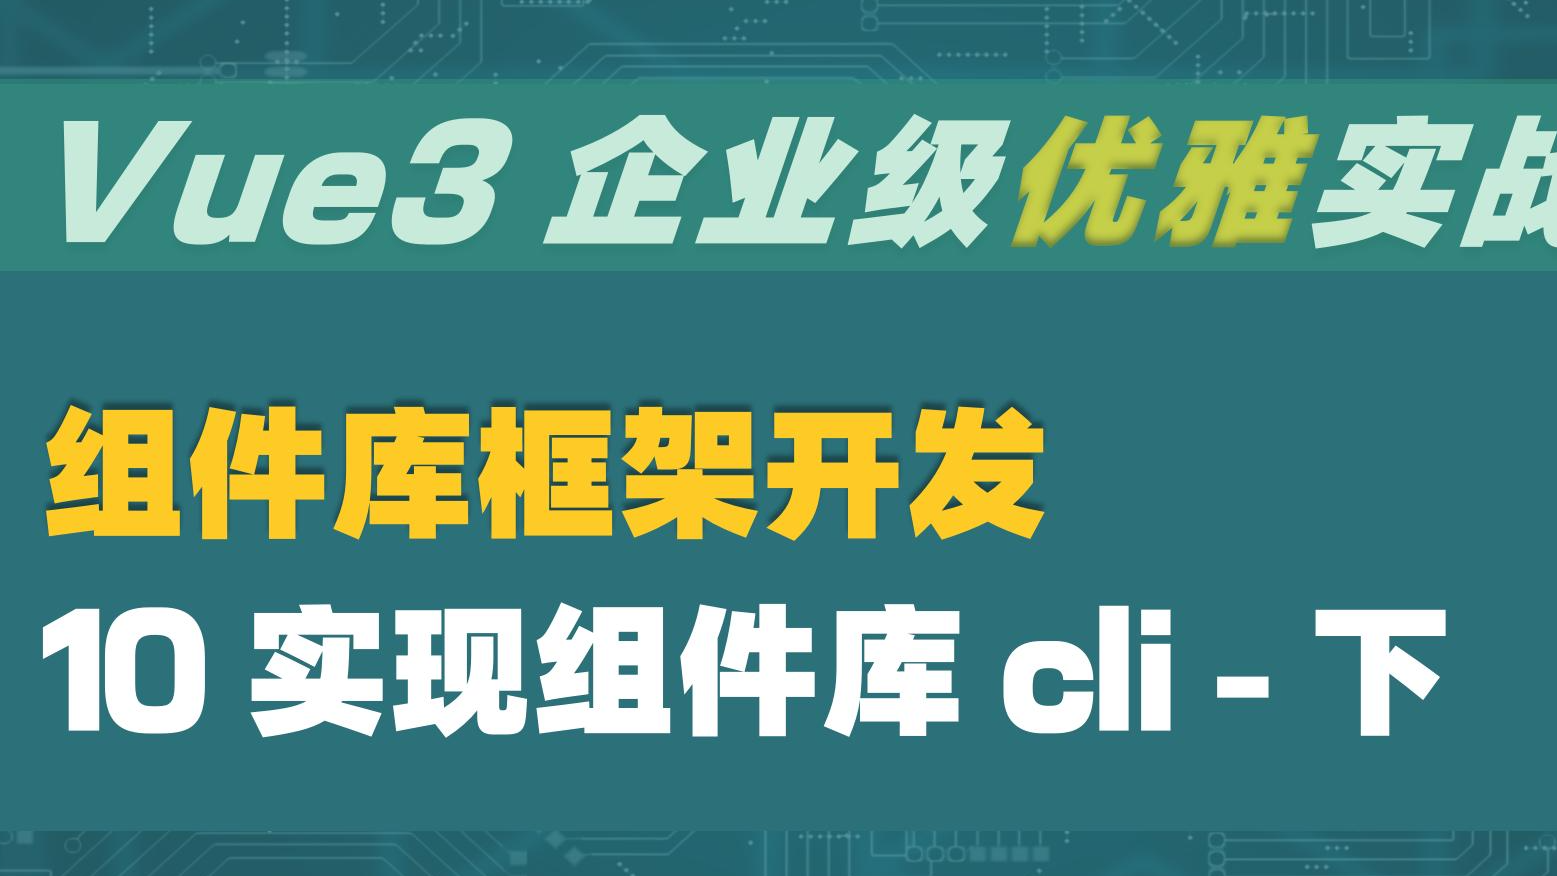  Vue3 企业级优雅实战 - 组件库框架 - 10 实现组件库 cli - 下